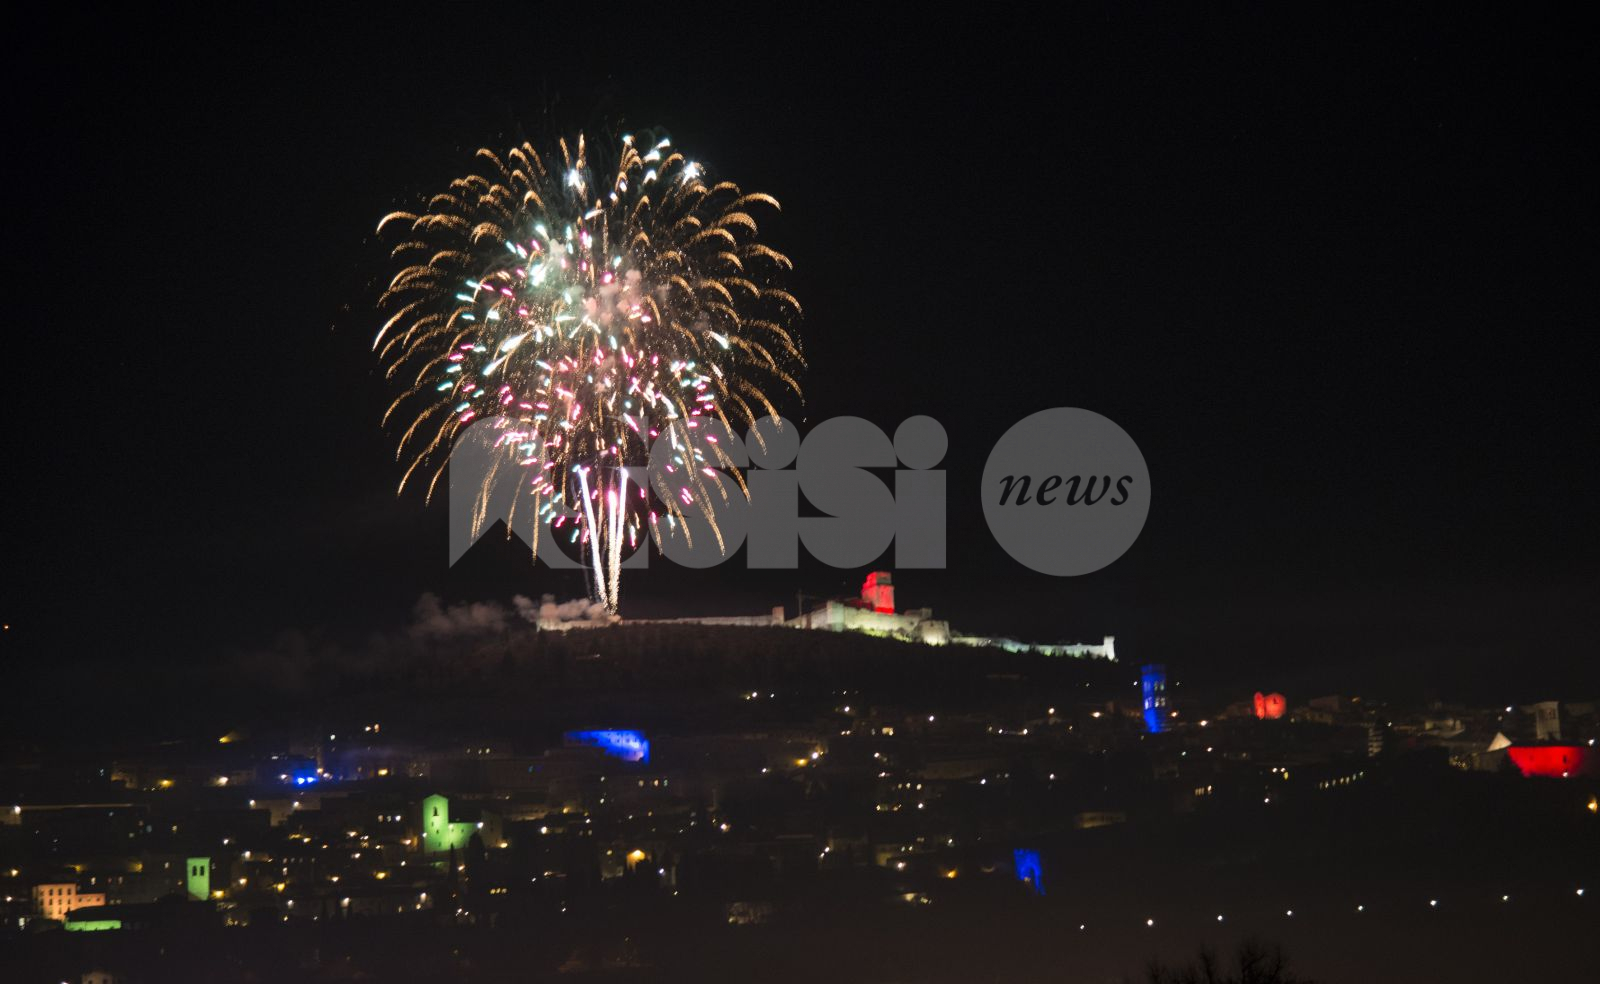 Capodanno ad Assisi 2023, concerto in piazza e gli eventi in programma dal 29 dicembre 2022 all'1 gennaio 2023